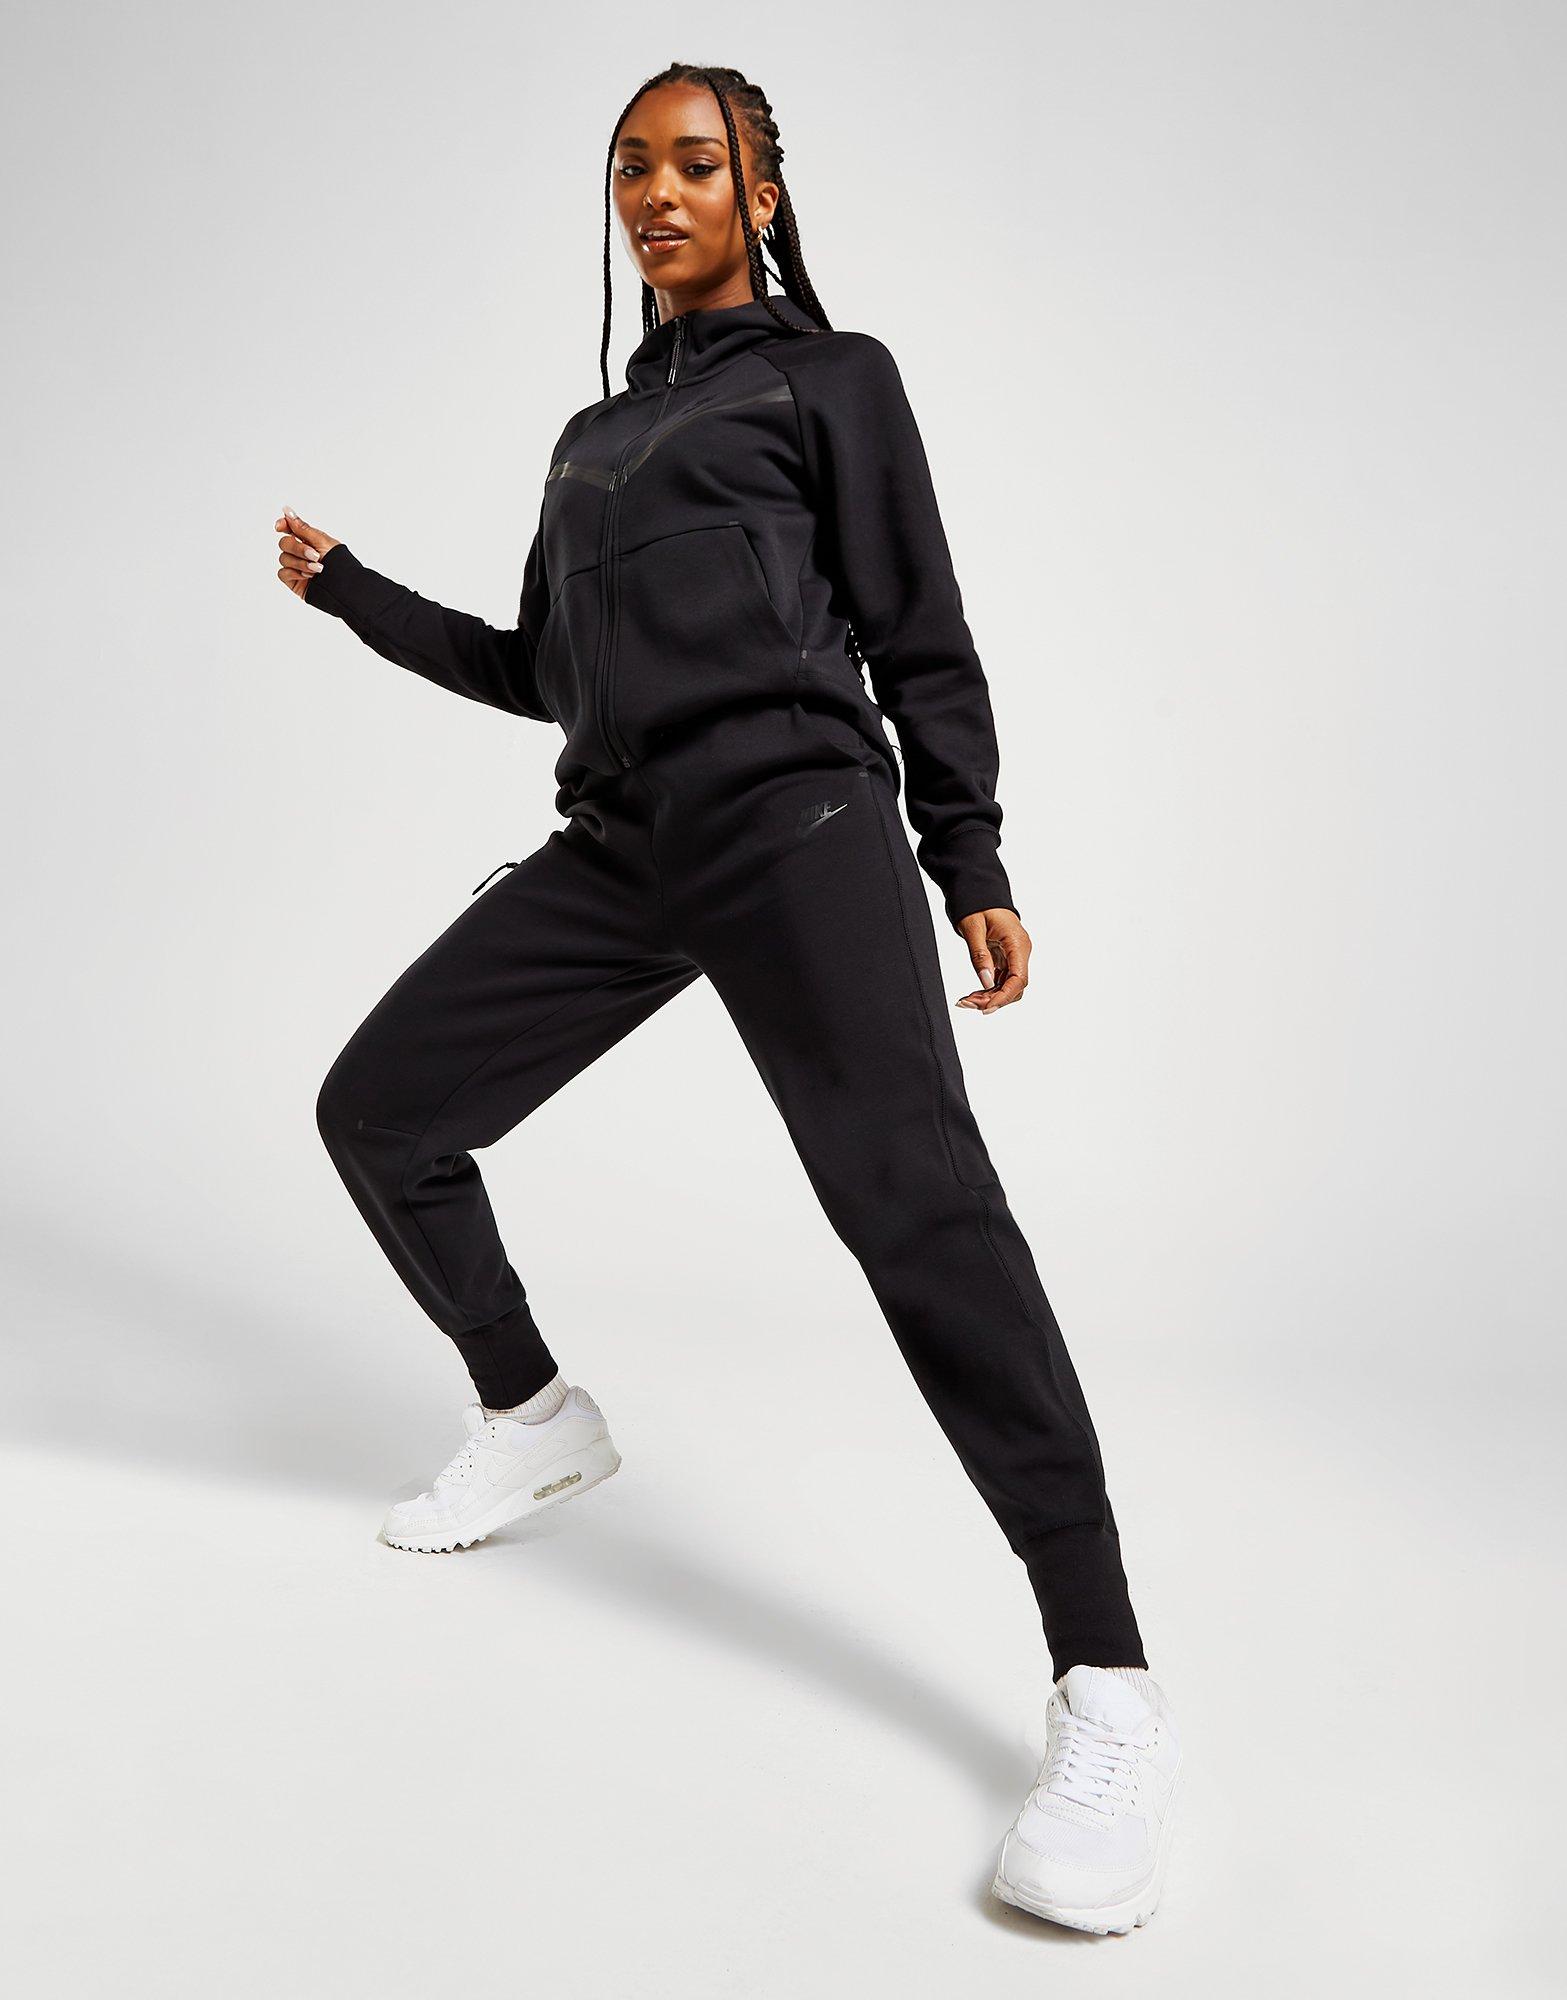 Absay Glorioso Franco Compra Nike pantalón de chándal Tech Fleece en Negro